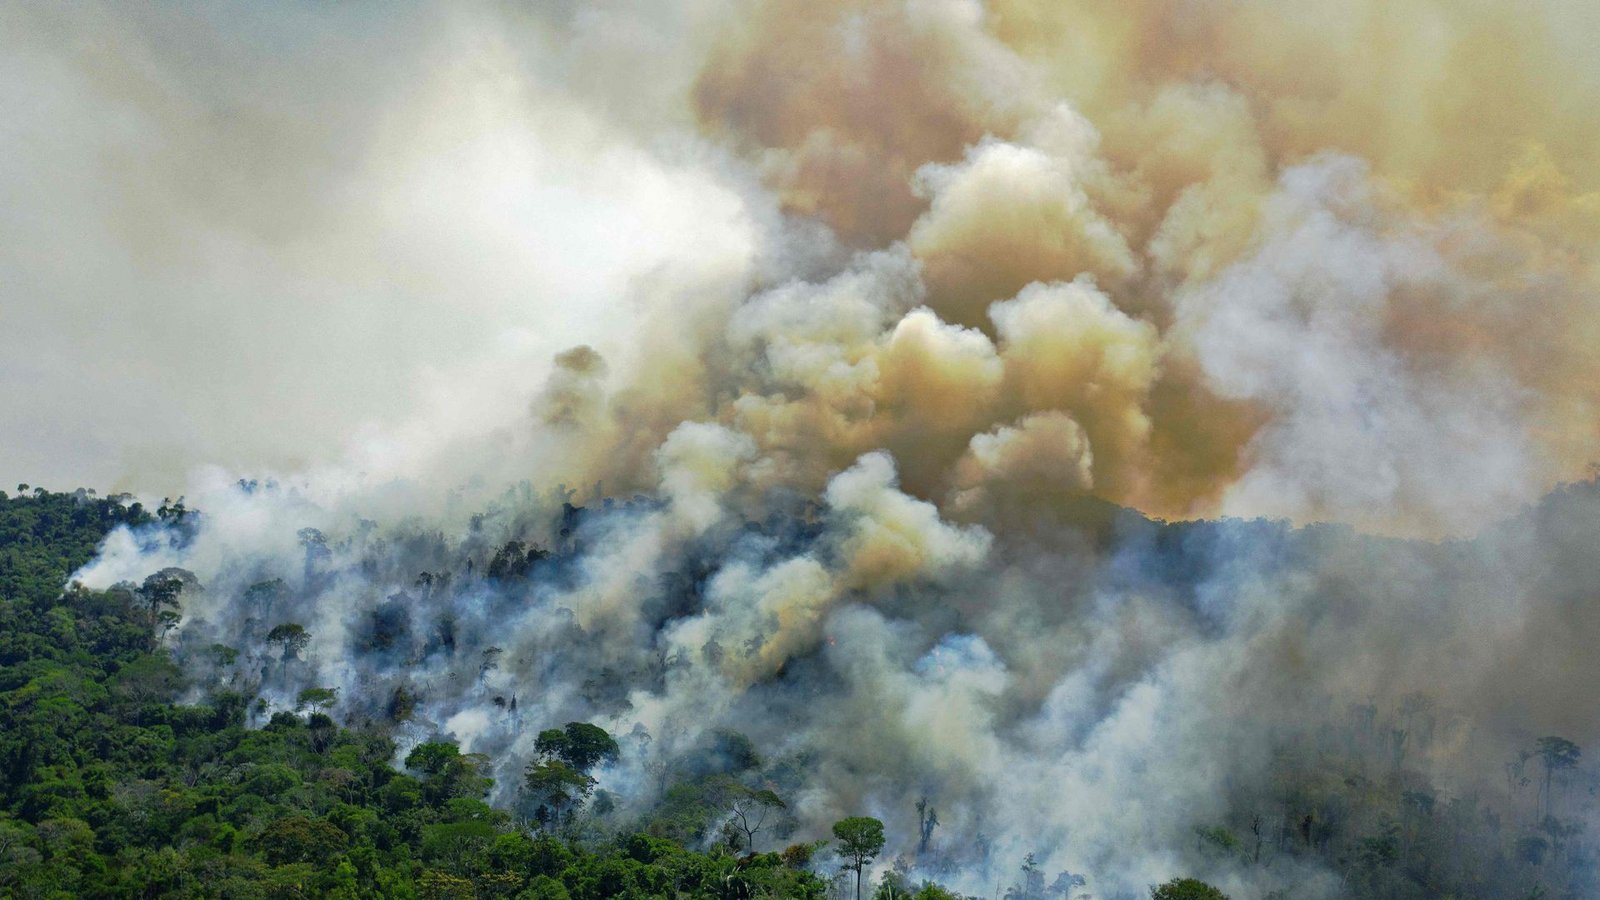 Auch das ein bekannter Anblick: Ein großes Feuer wütet im Amazonas Regenwald südlich von Novo Progresso in Brasilien.Foto: AFP/CARL DE SOUZA